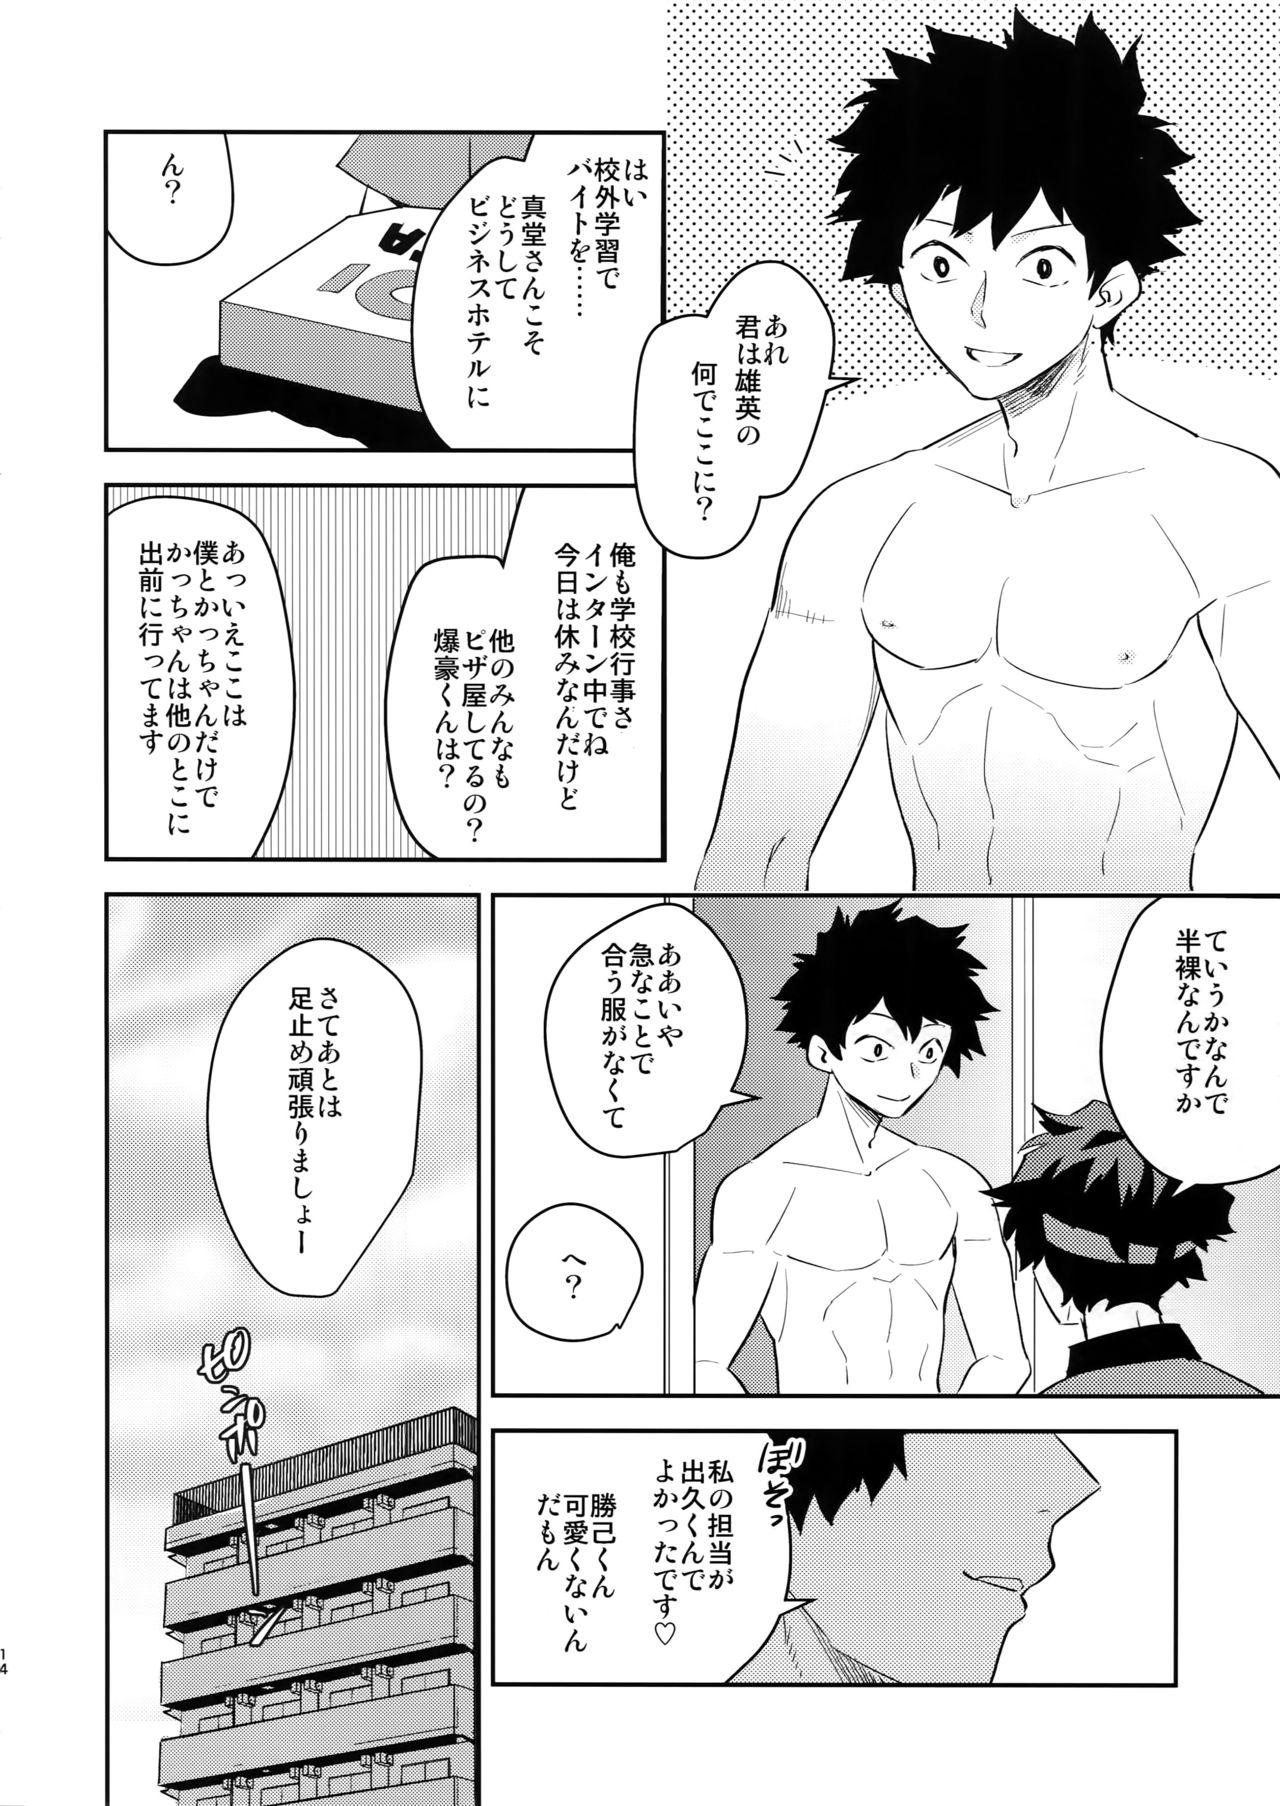 Exposed Goshimei desu! - My hero academia Highschool - Page 13